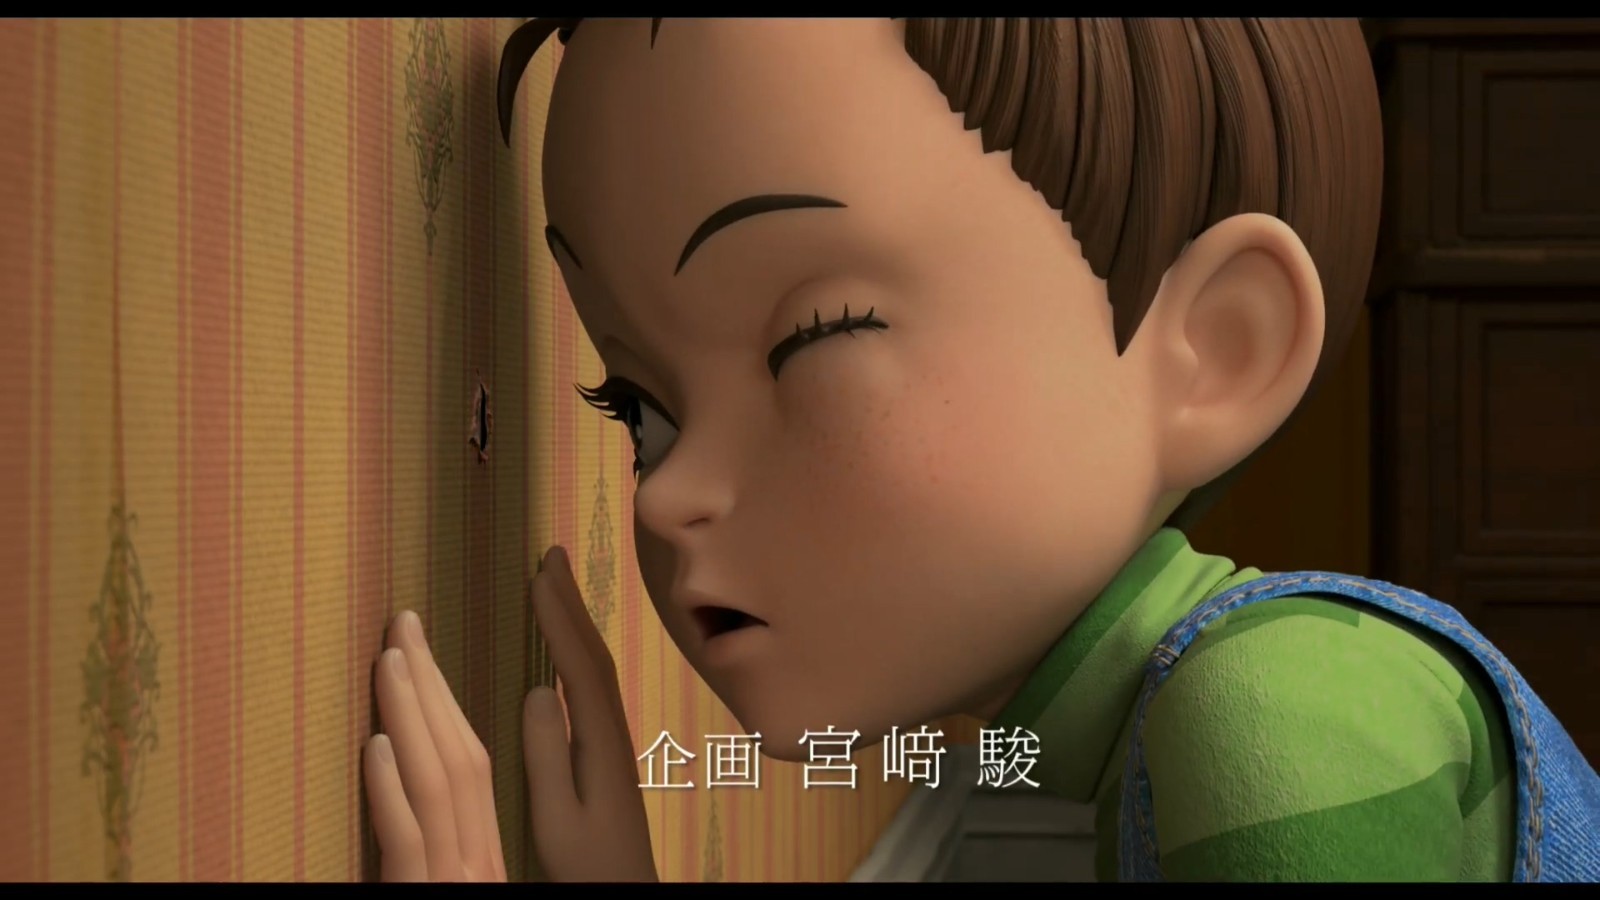 吉卜力3DCG动画电影《阿雅与魔女》特别宣传片 8月27日上映